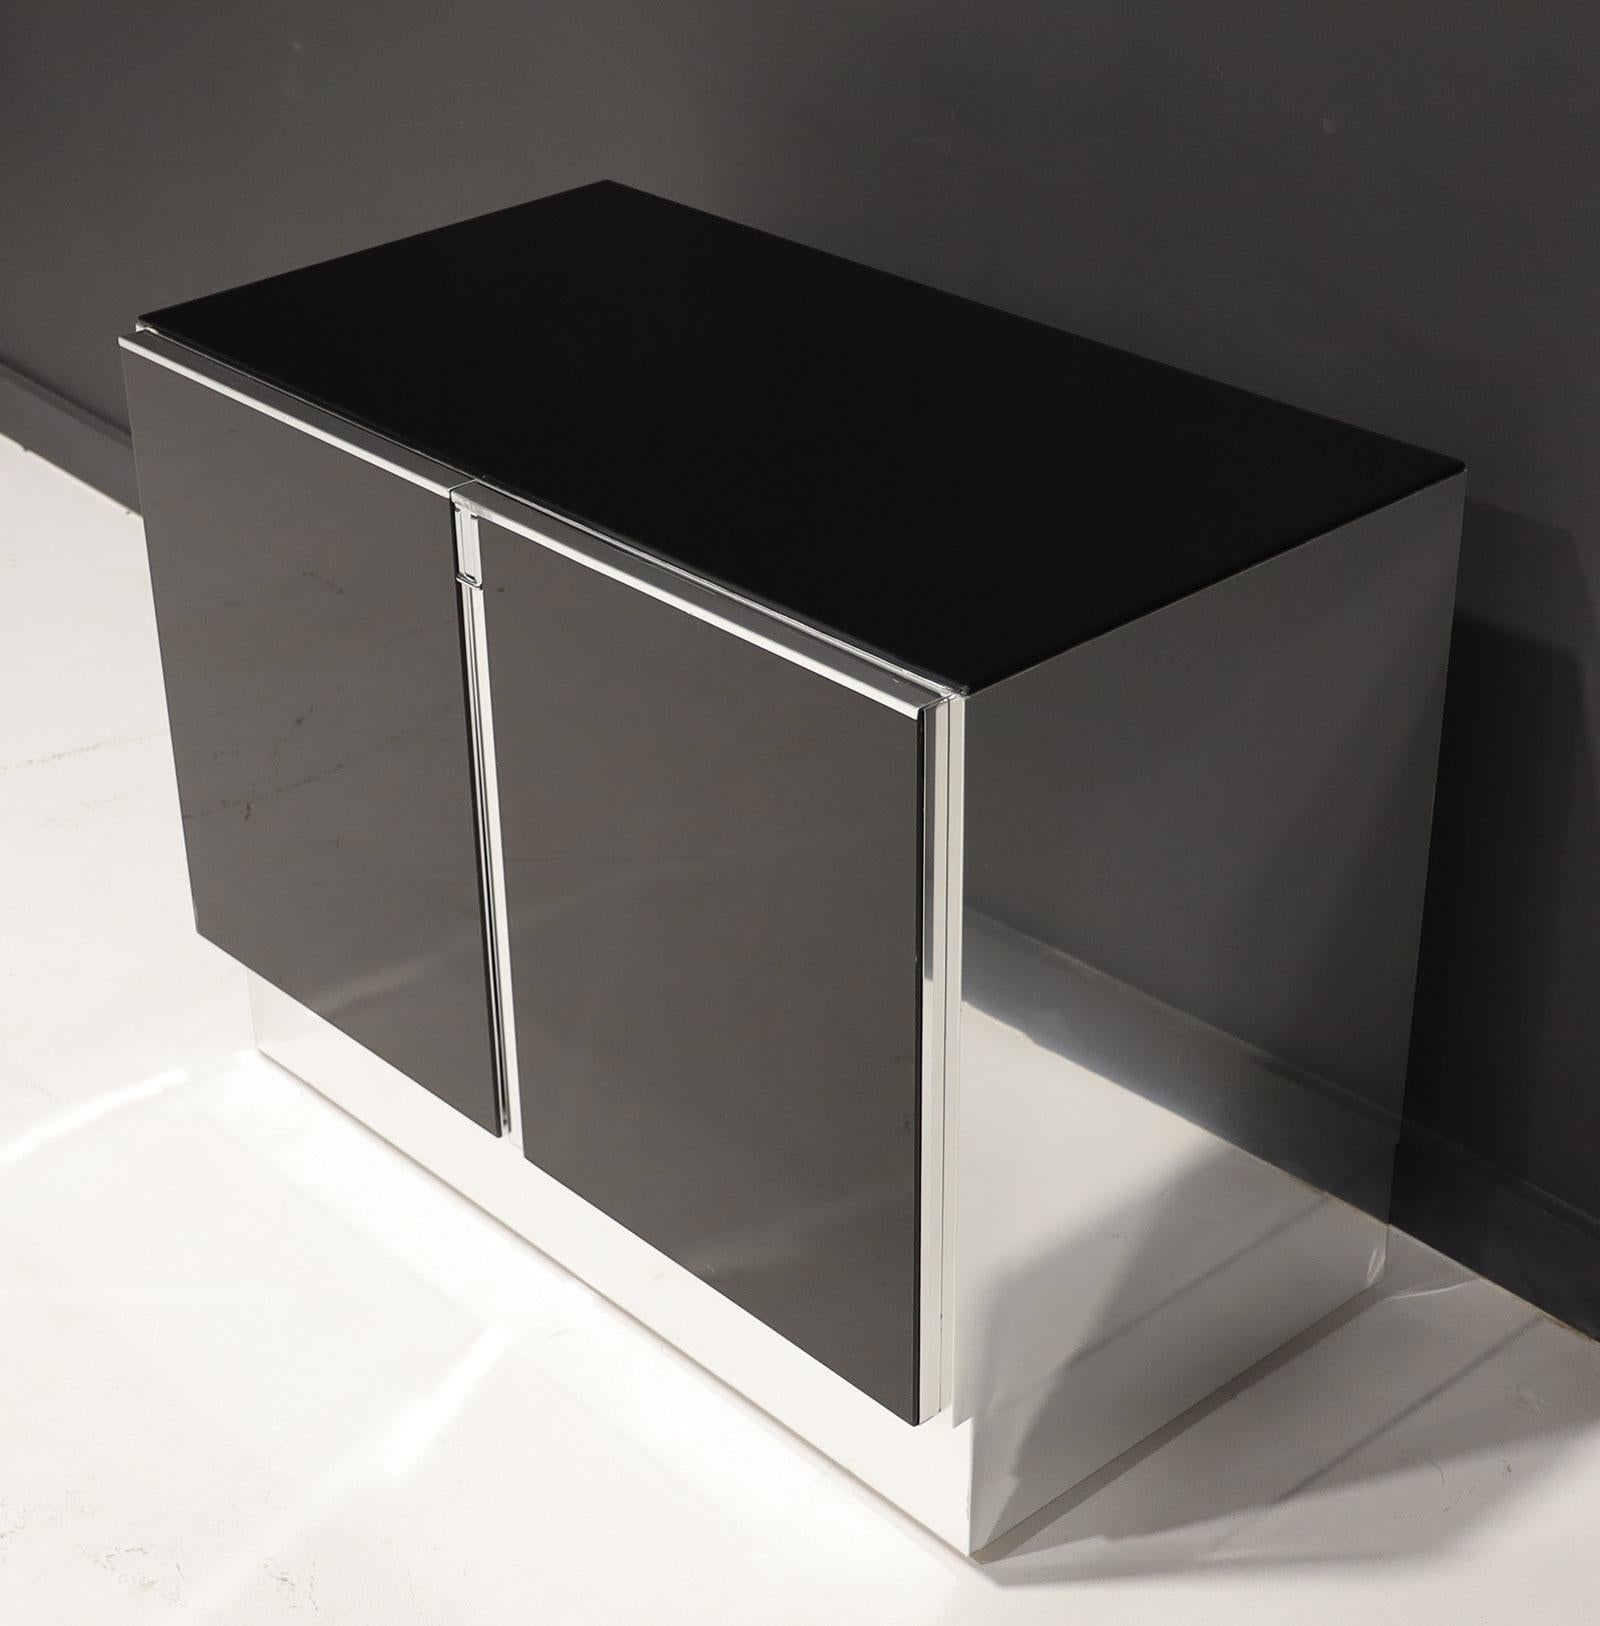 Schwarzer Glasschrank Ello aus den 1970er-Jahren mit verchromter Zierleiste. Schwarze Glasplatte und -front mit verchromten Beschlägen und Seiten. Öffnet sich und gibt ein einzelnes Regalfach frei.